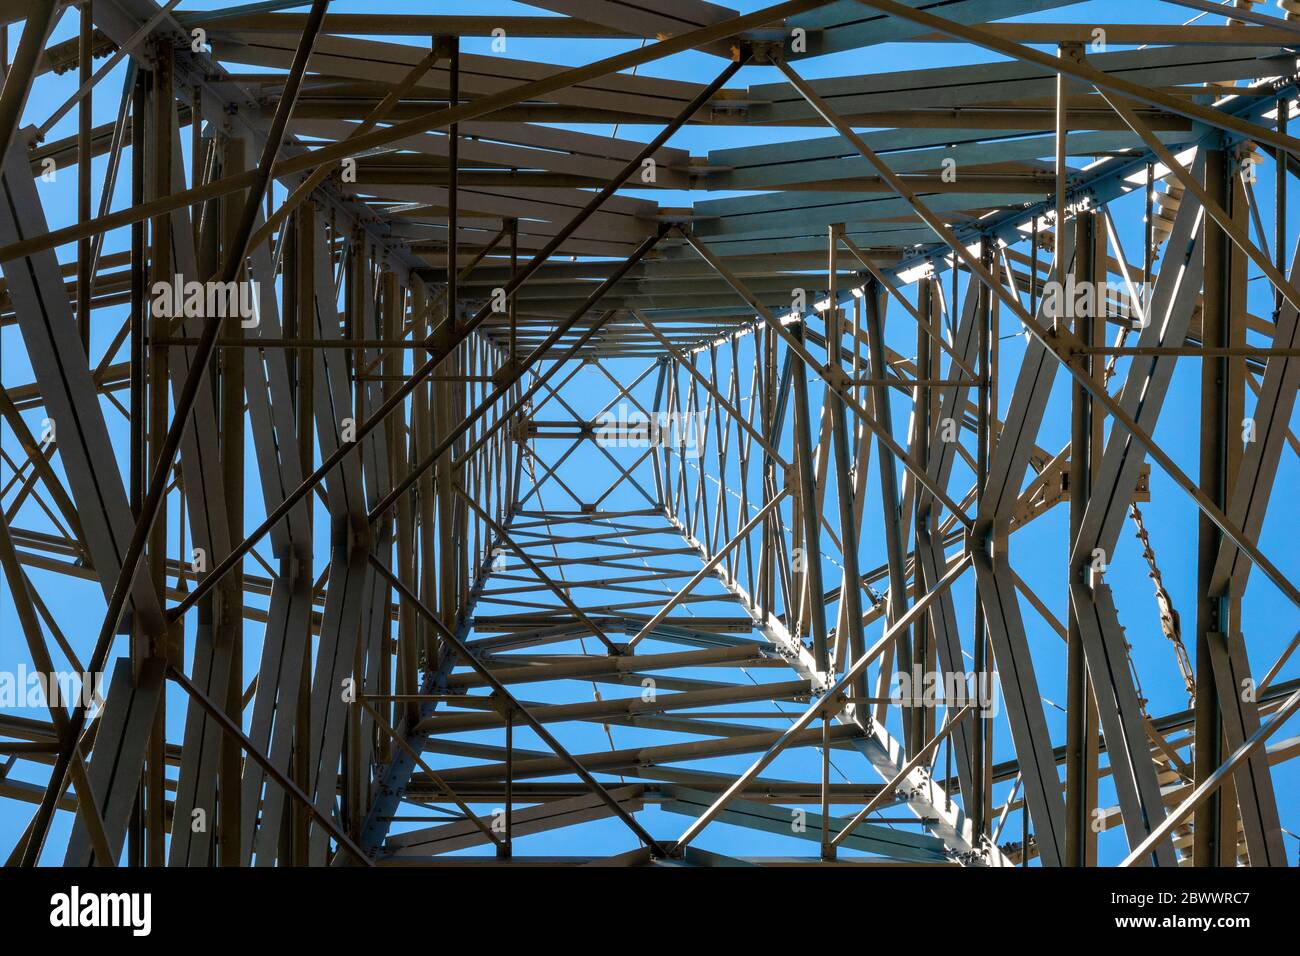 Mirando a través de la red metálica de un pilón de electricidad de alta tensión contra un cielo azul Foto de stock